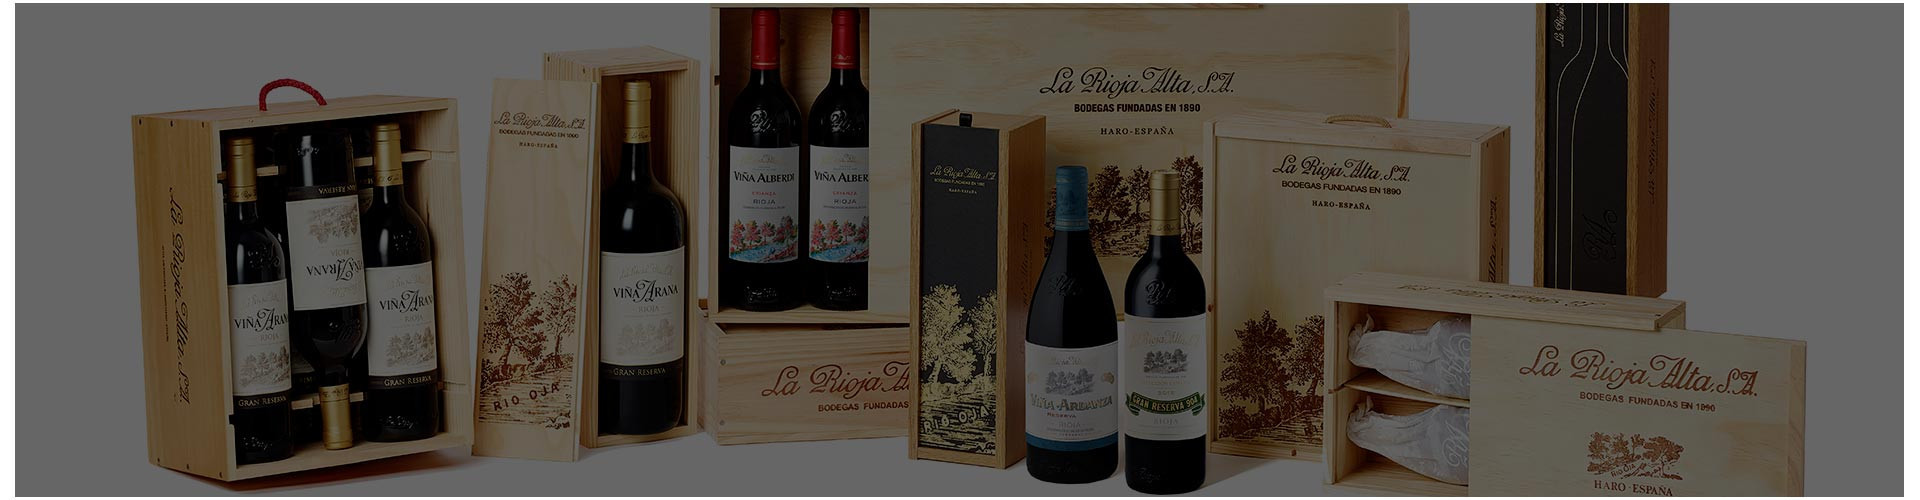 Todos los vinos de La Rioja Alta, S.A.